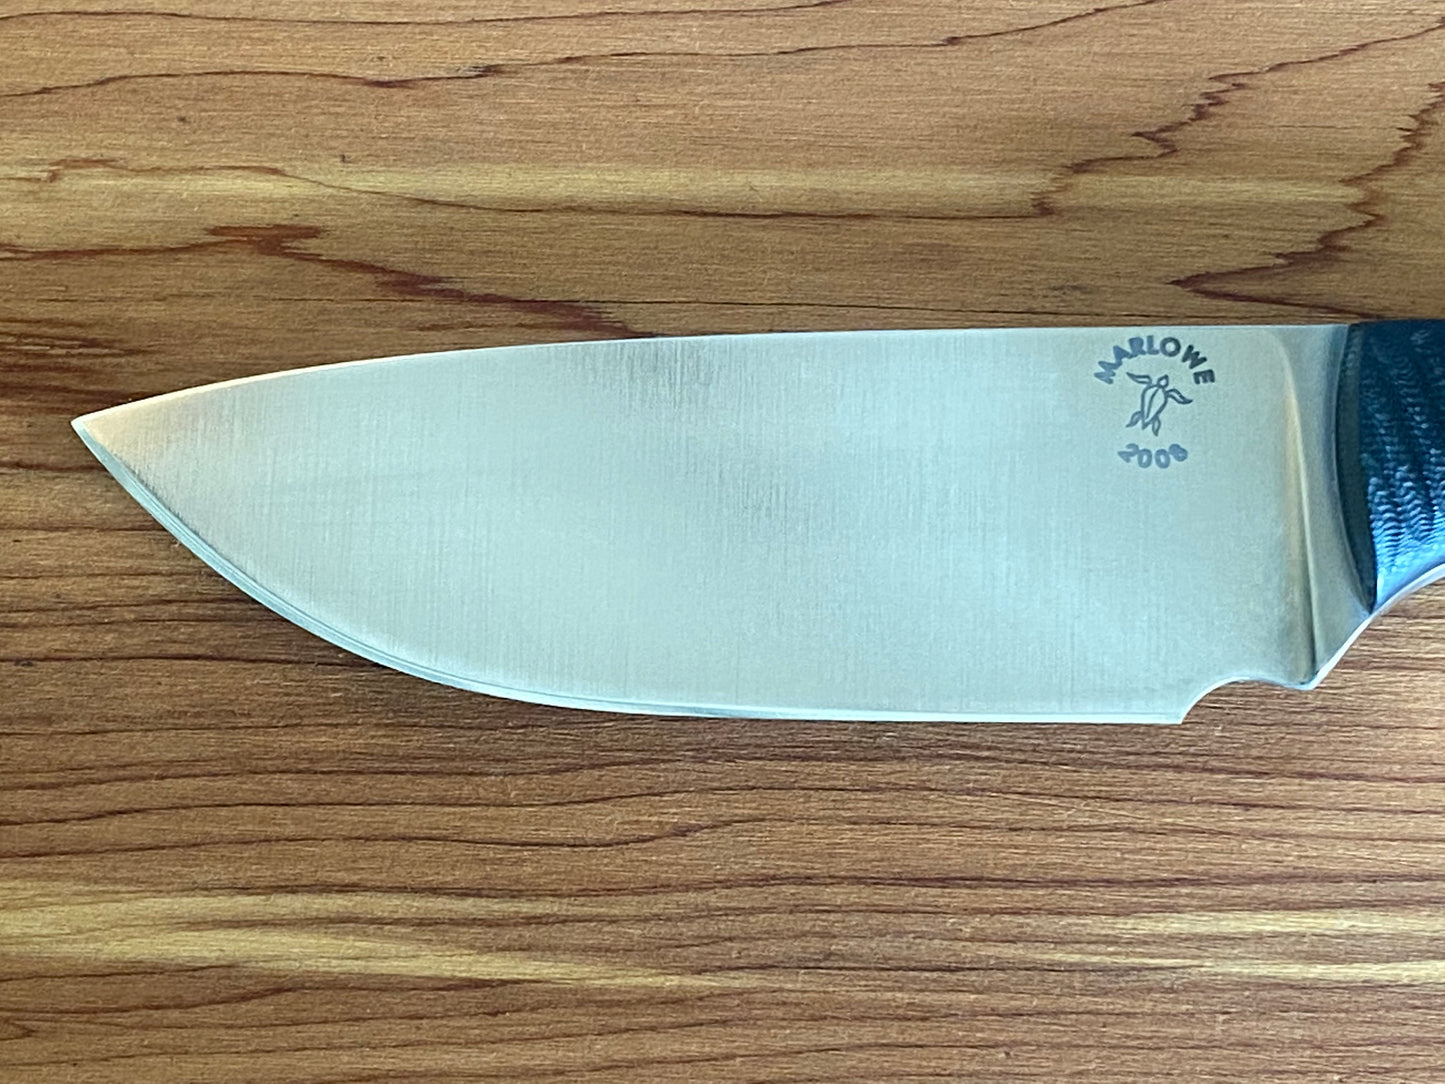 Custom Charles Marlowe Sheath Knife